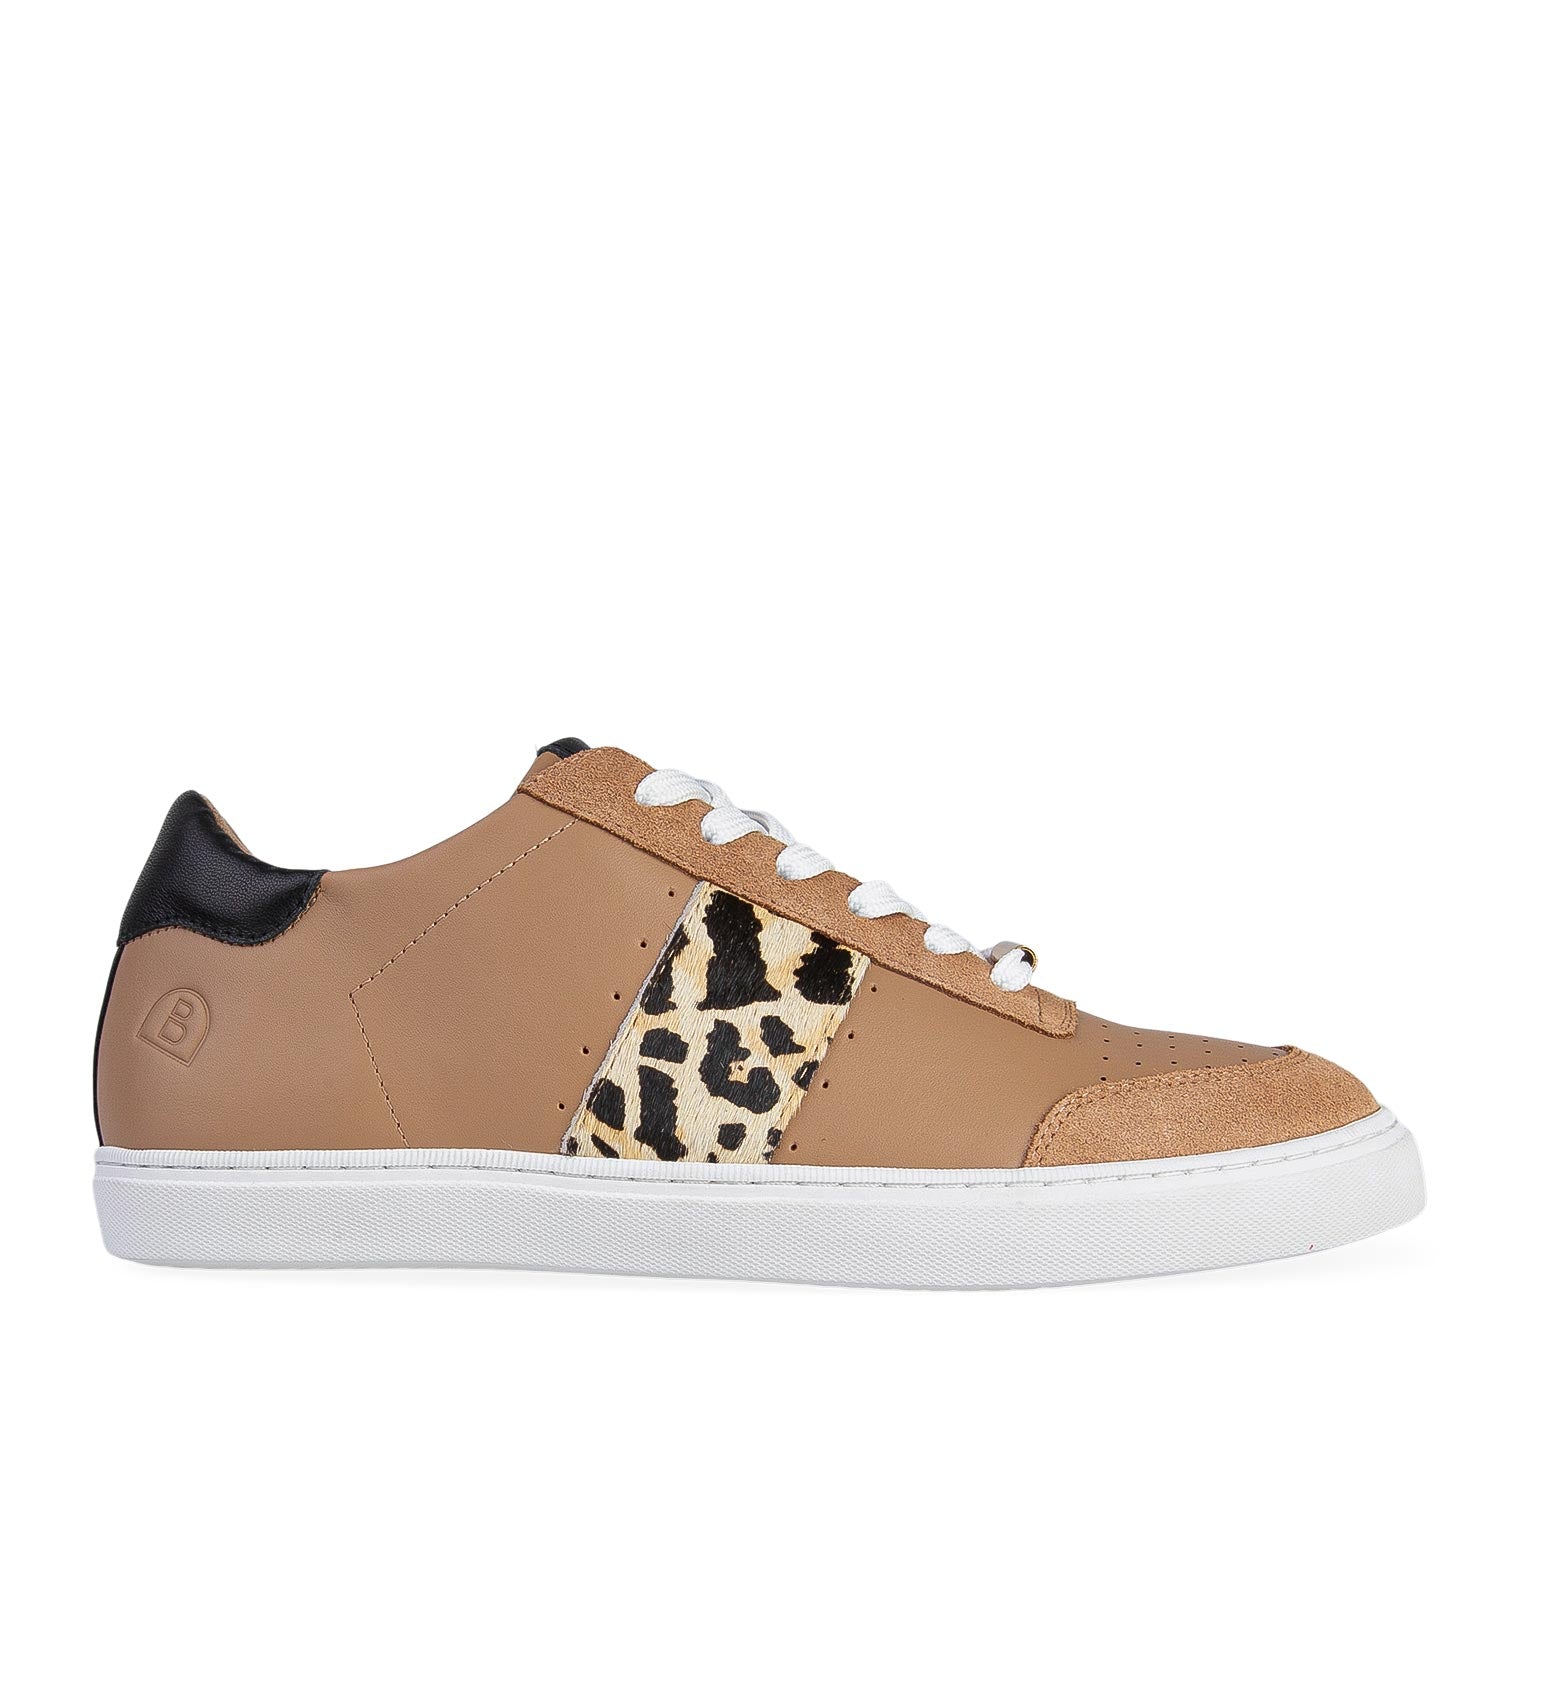 Skua Camel & Leopard Print Leather Sneakers | Bared Footwear